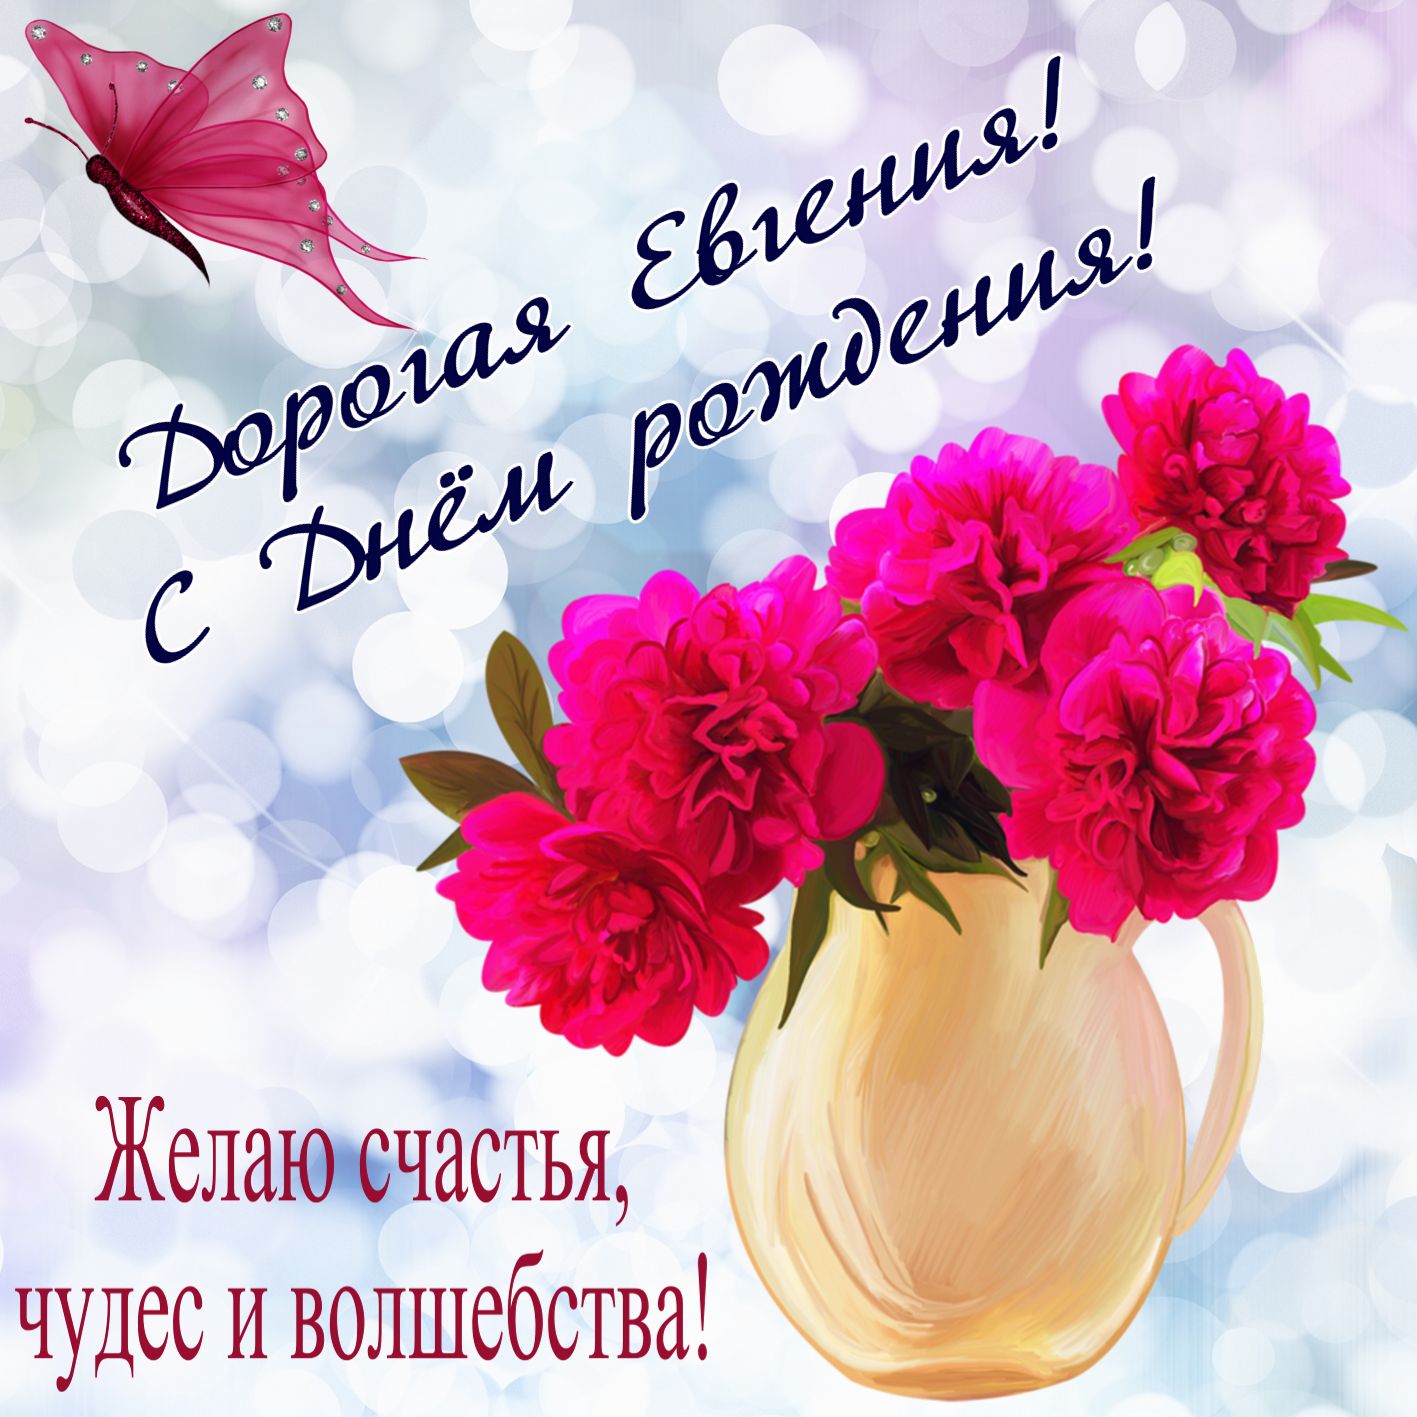 Цветы в вазе на День рождения Евгении